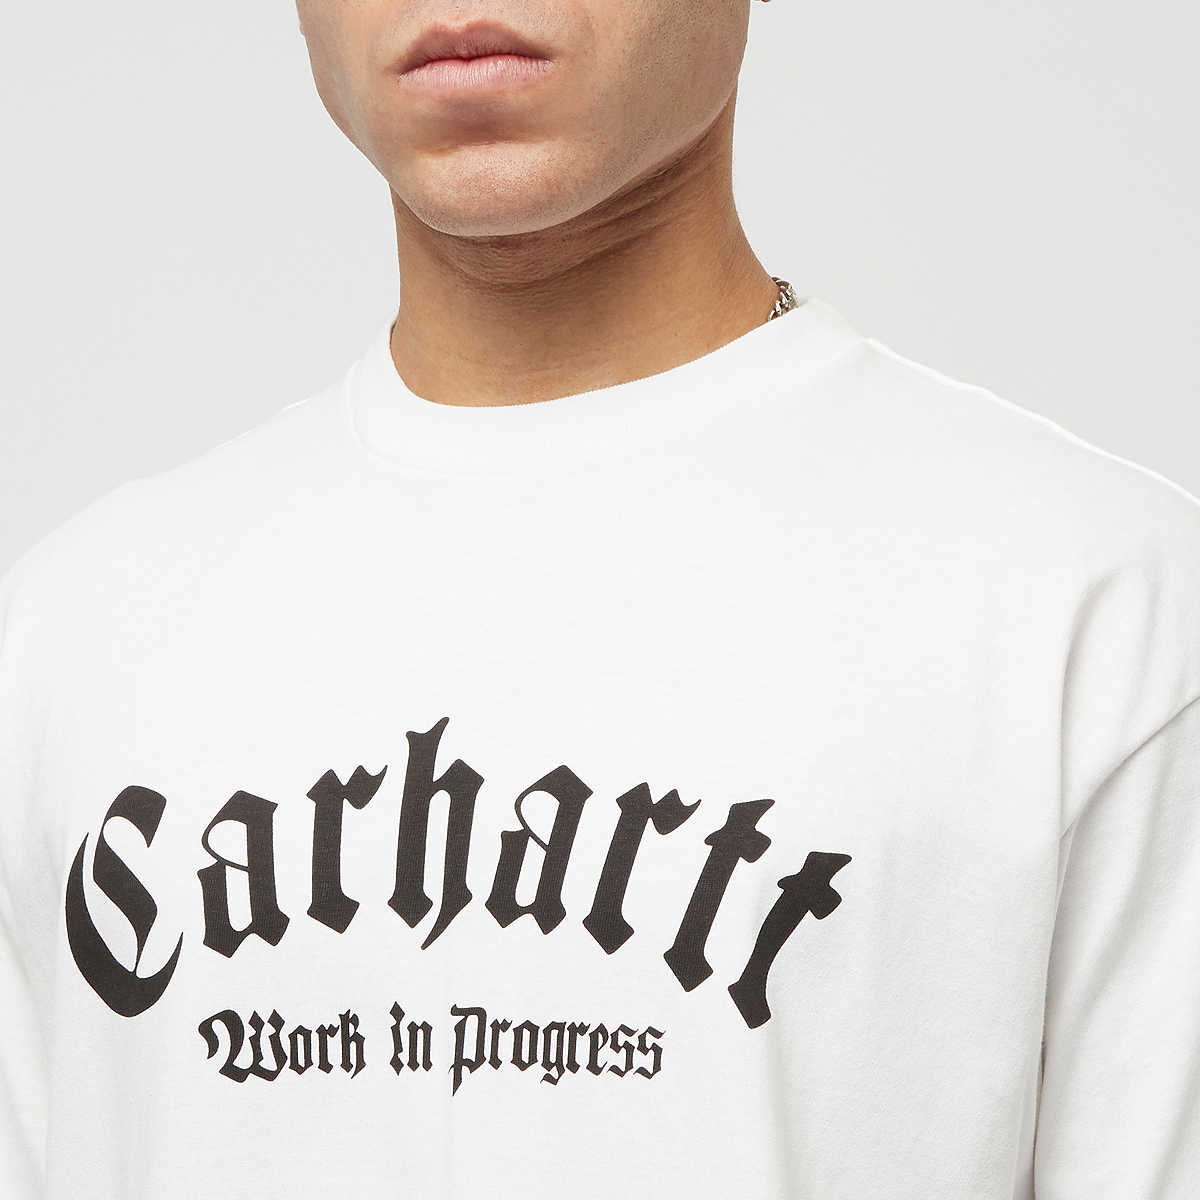 Carhartt WIP Shortsleeve Onyx T-shirt T-shirts Heren White black maat: S beschikbare maaten:S M XL